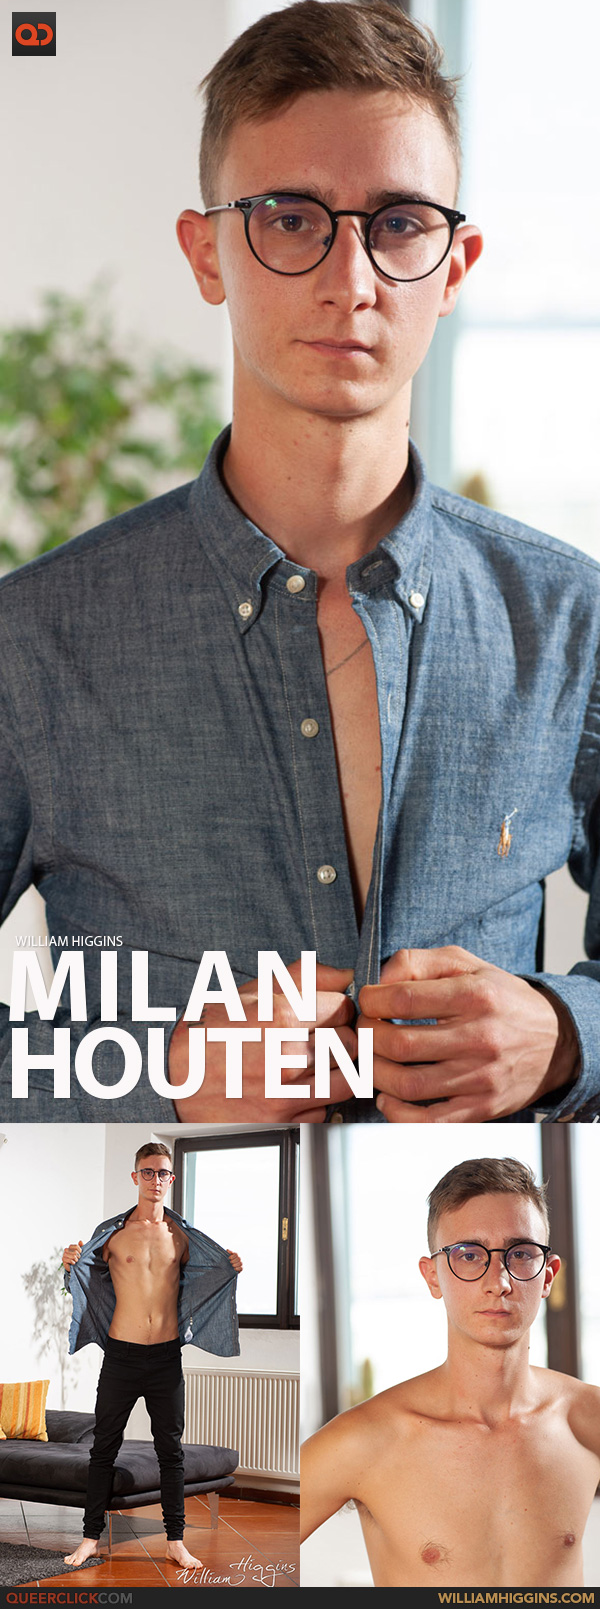 William Higgins: Milan Houten